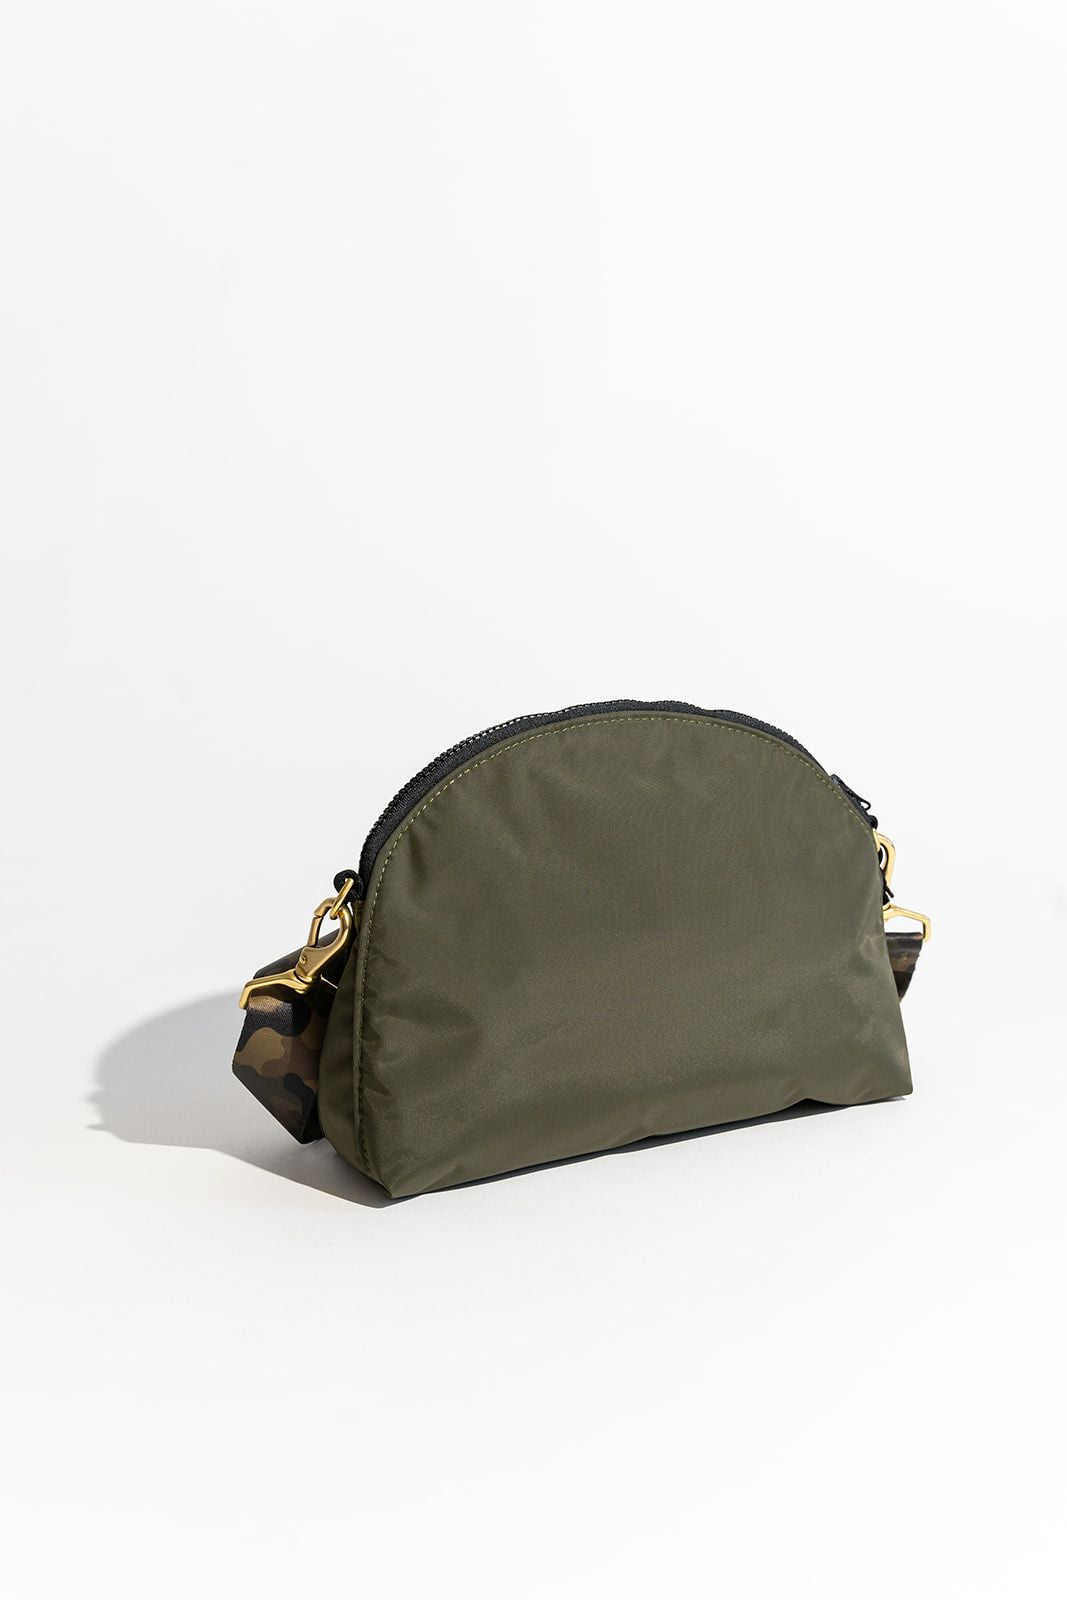 Hopper | Military Green Nylon